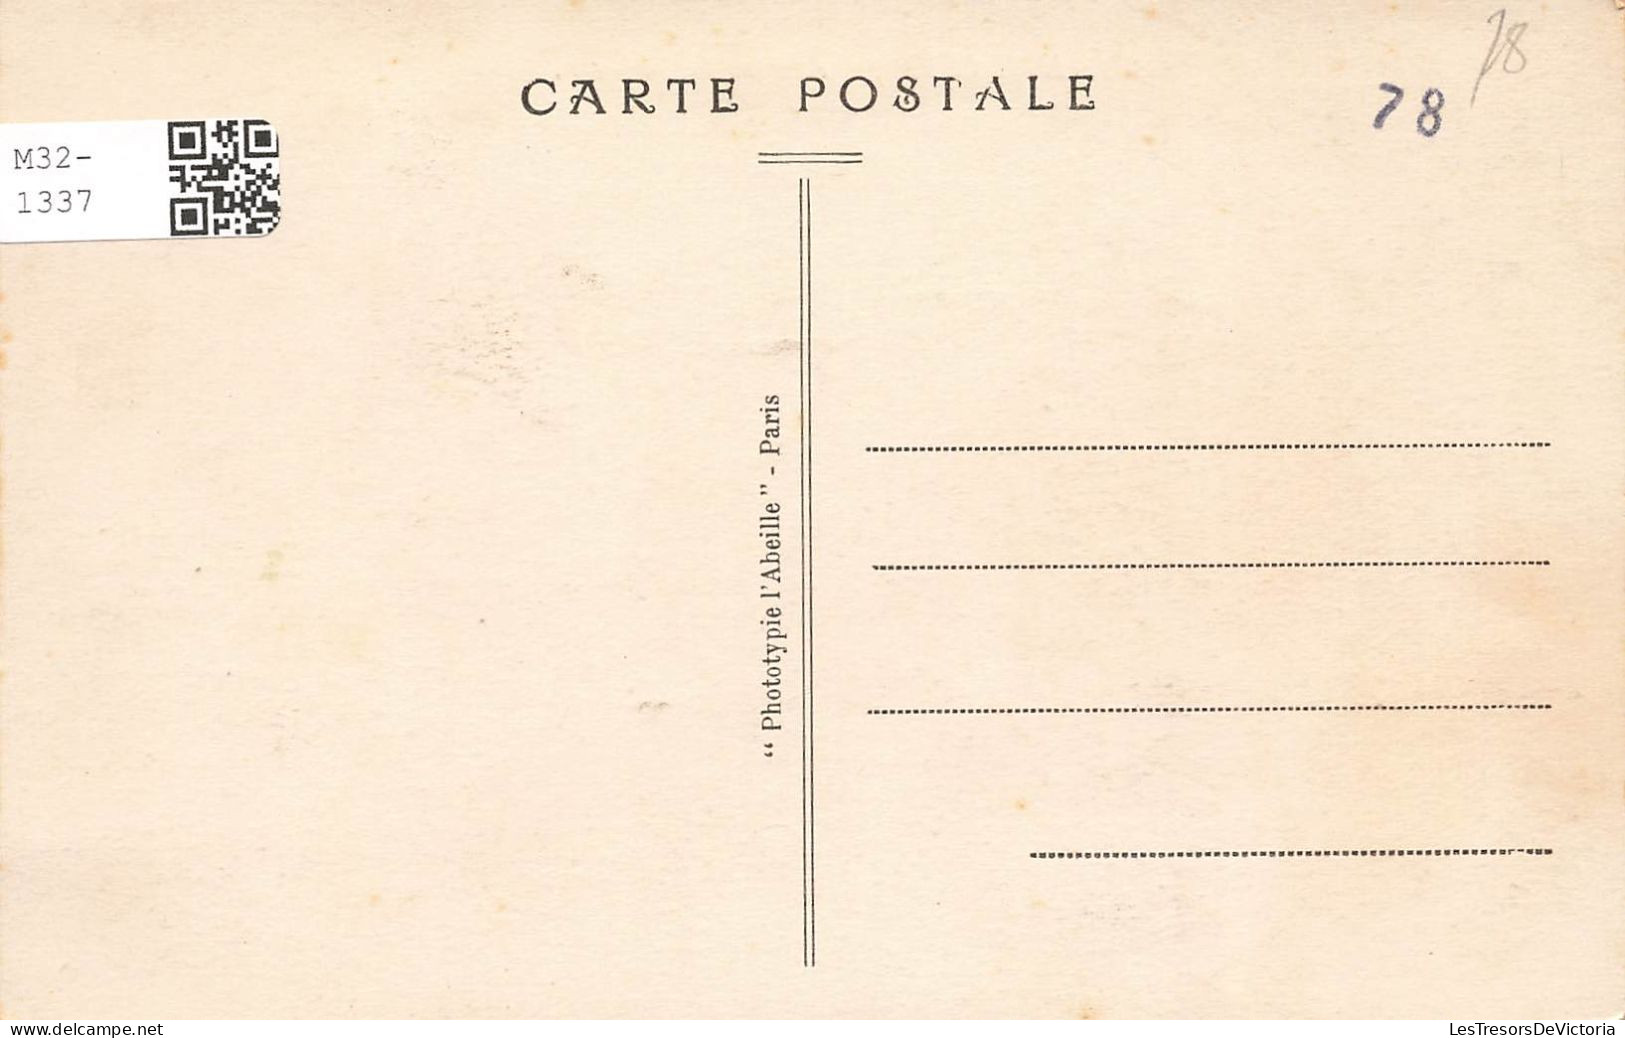 FRANCE - Houilles - Vue Sur L'avenue De La Gare - Carte Postale Ancienne - Houilles